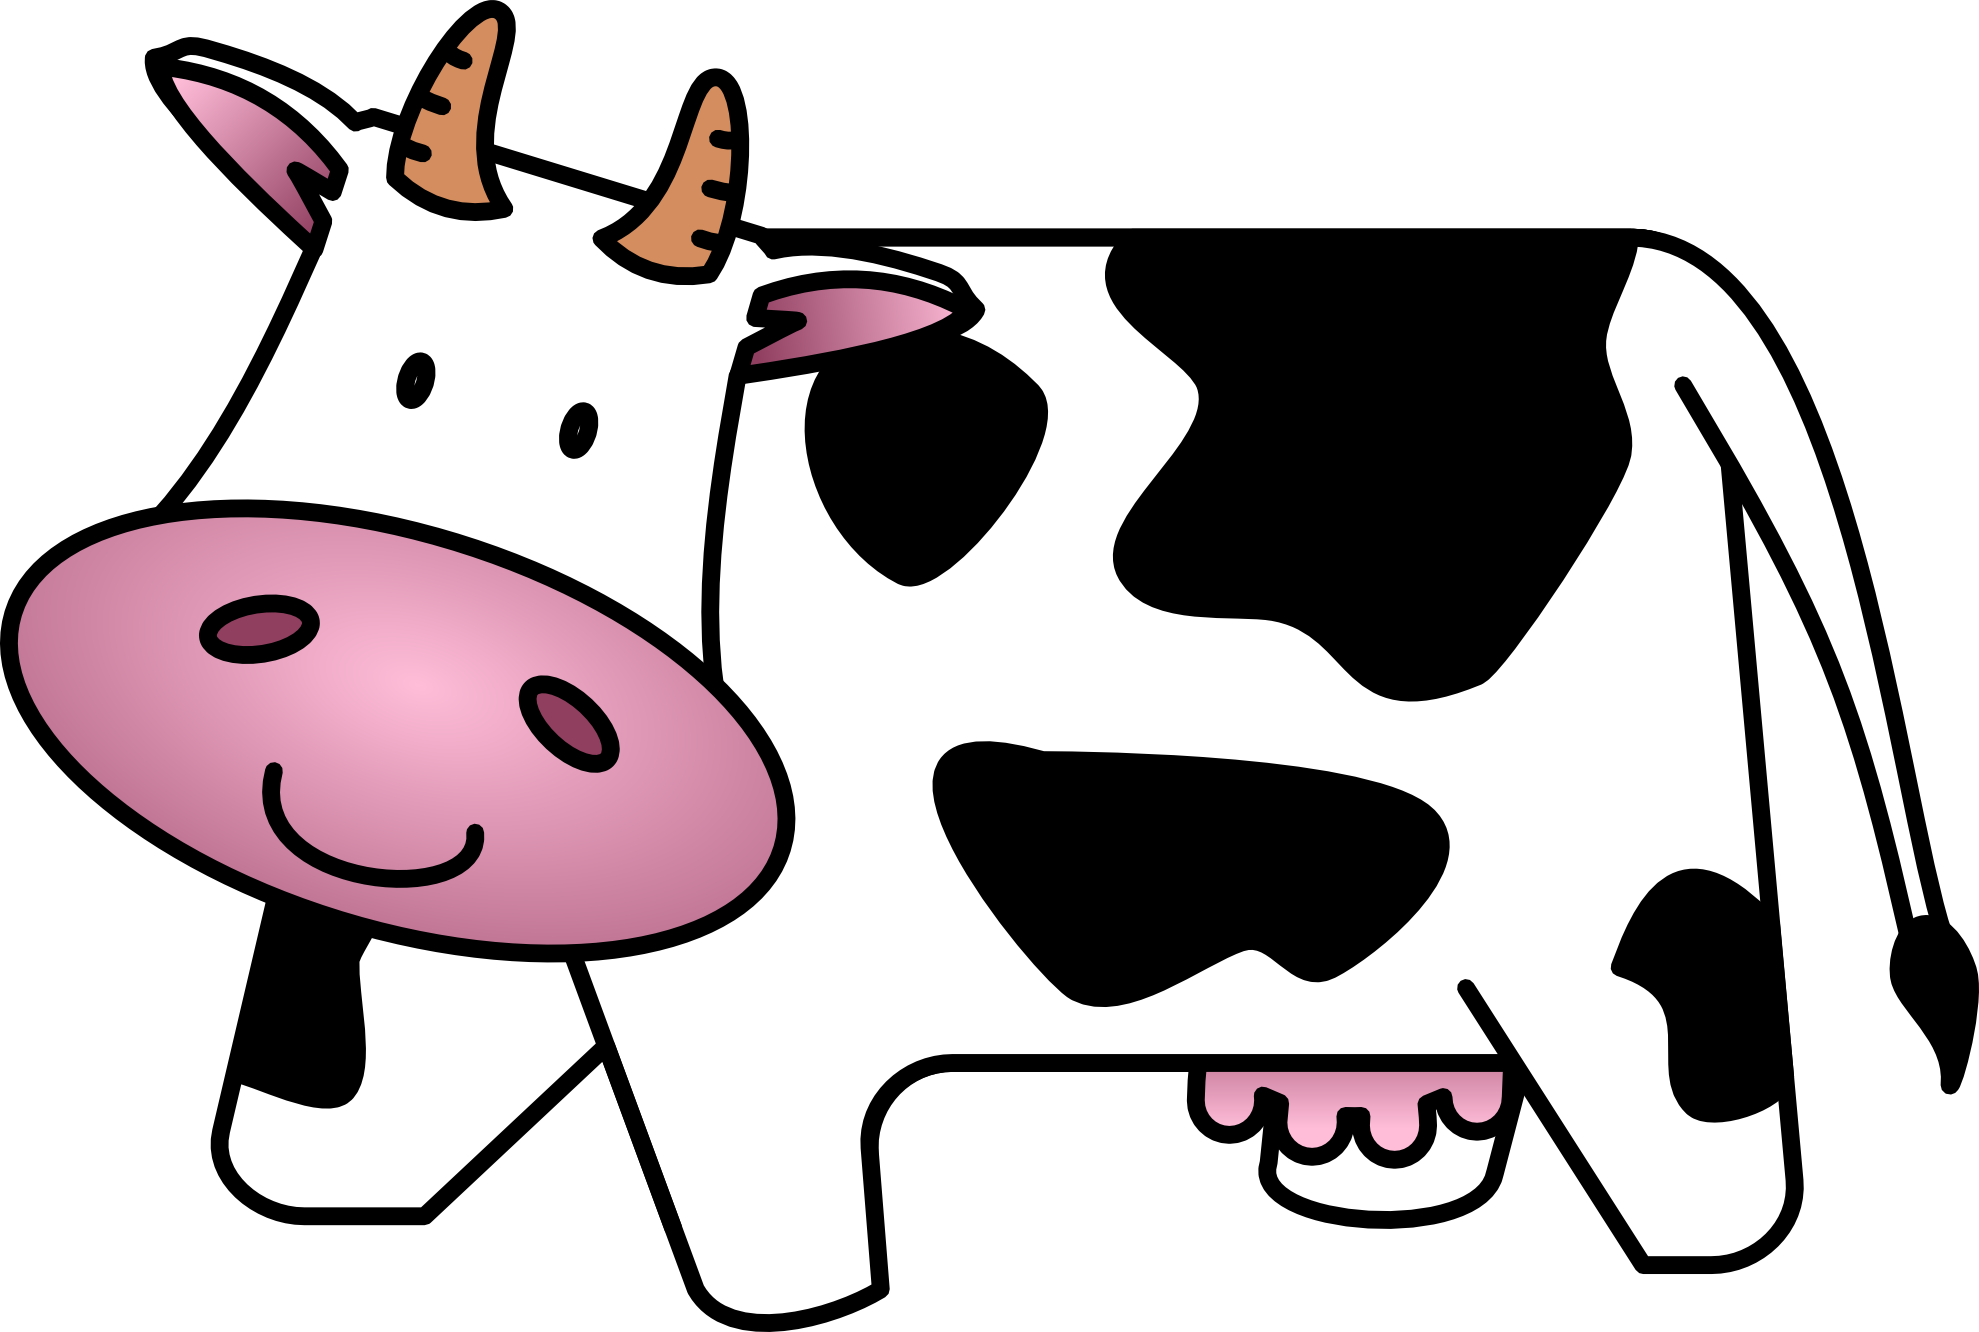 Cartoon cows clip art - Cows Clipart